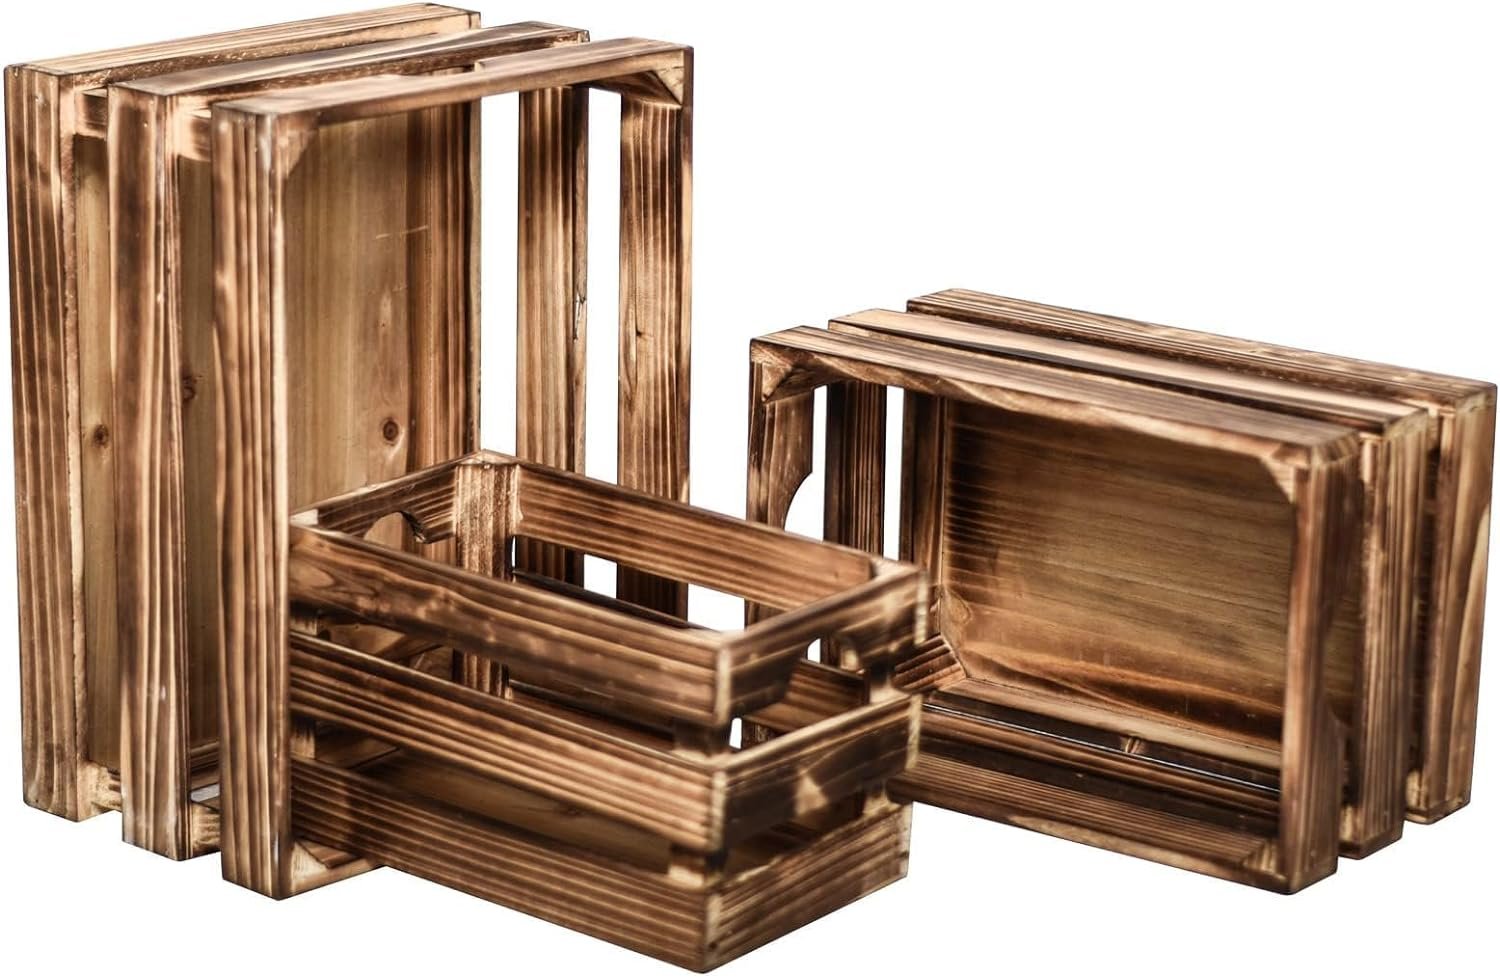 Vintage Rustic Brown Wood Crates Review